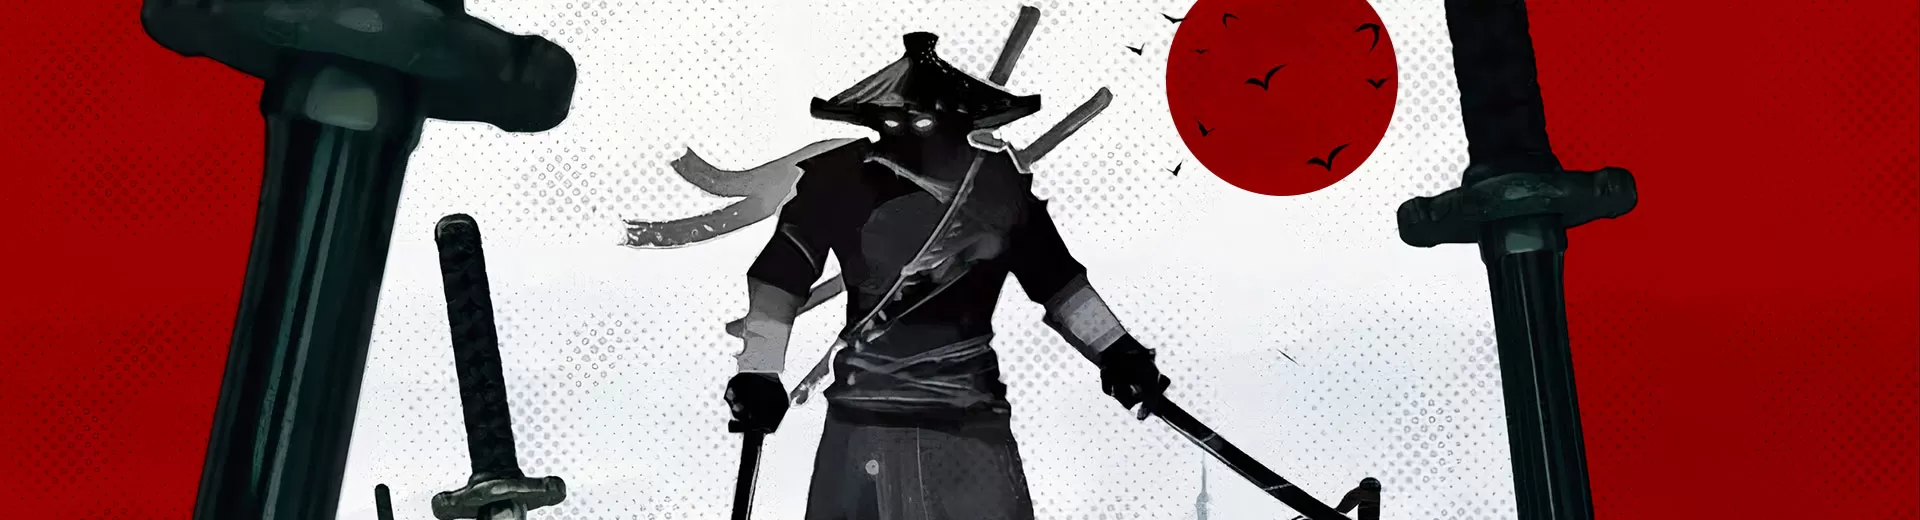 Ninja Arashi Emulator Pc